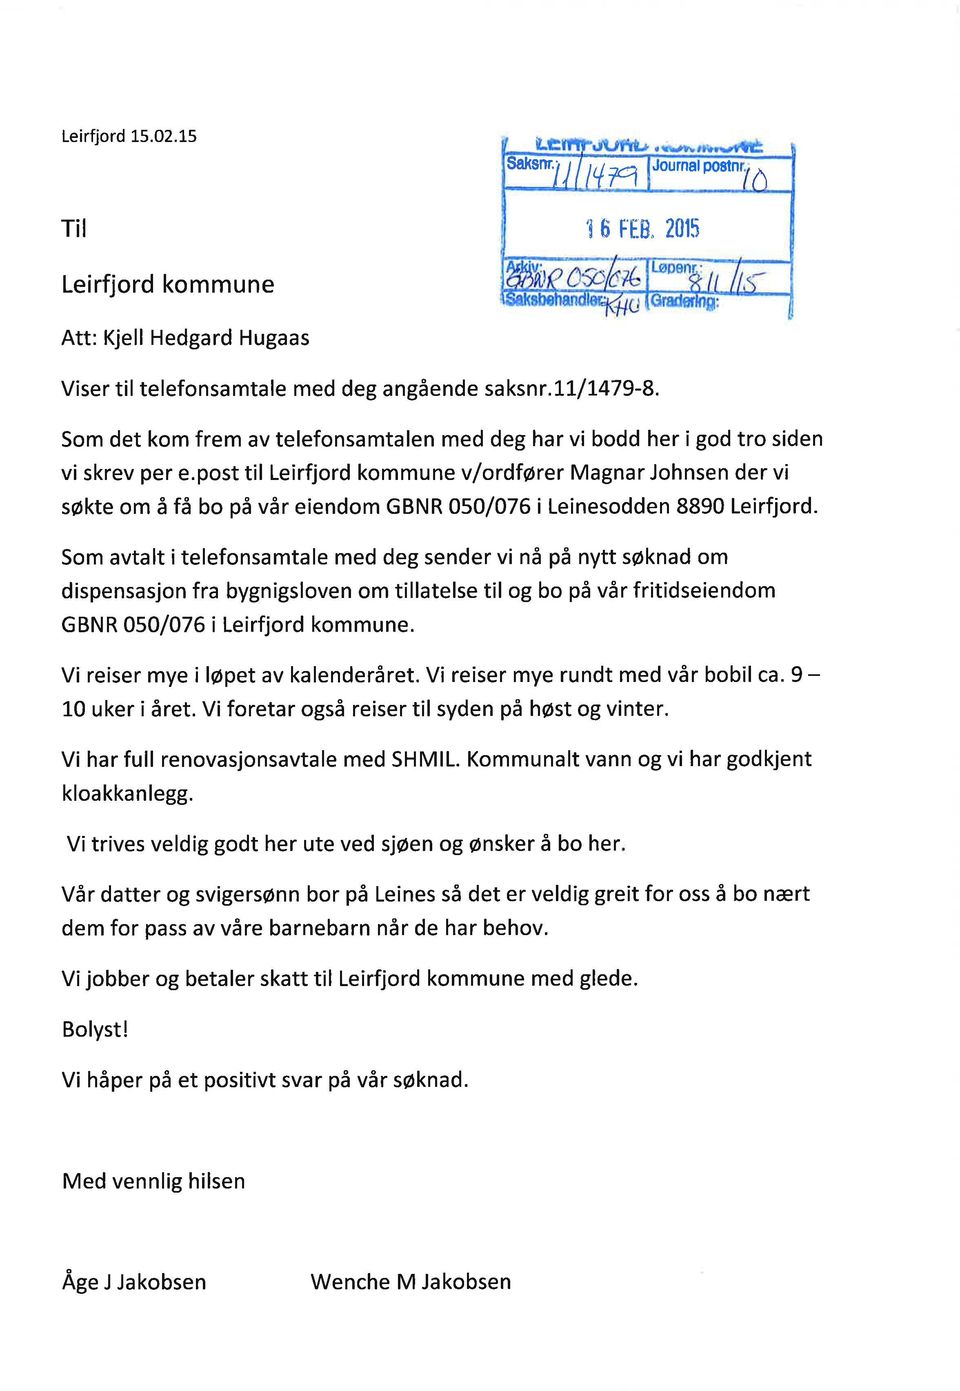 post til Leirfjord kommune v/ordfører Magnar Johnsen der vi søkte om å få bo på vår eiendom GBNR 050 076 i Leinesodden 8890 Leirfjord.